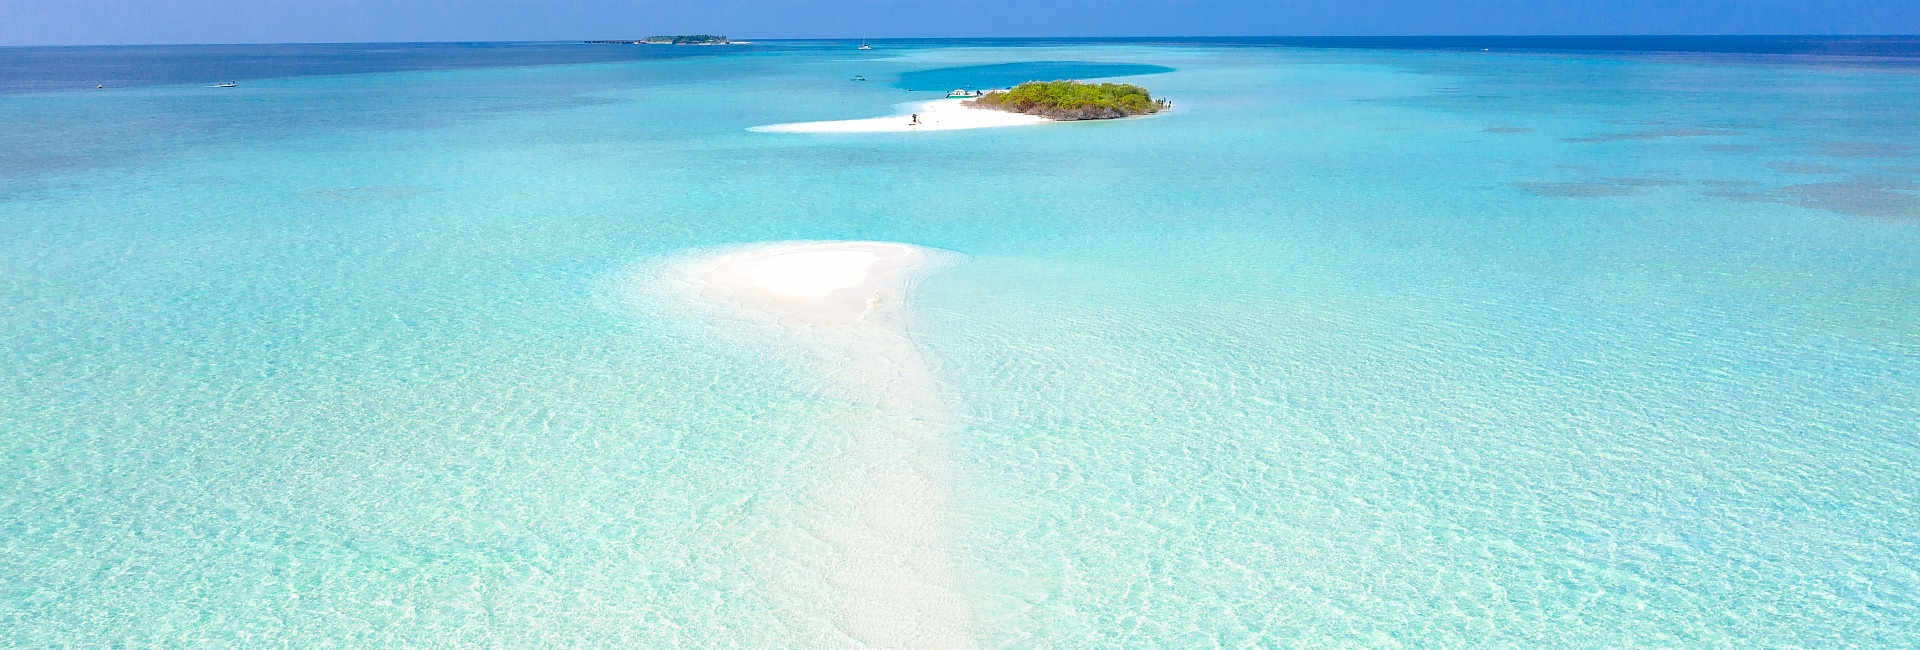 Курорт мечты - Мальдивы! 